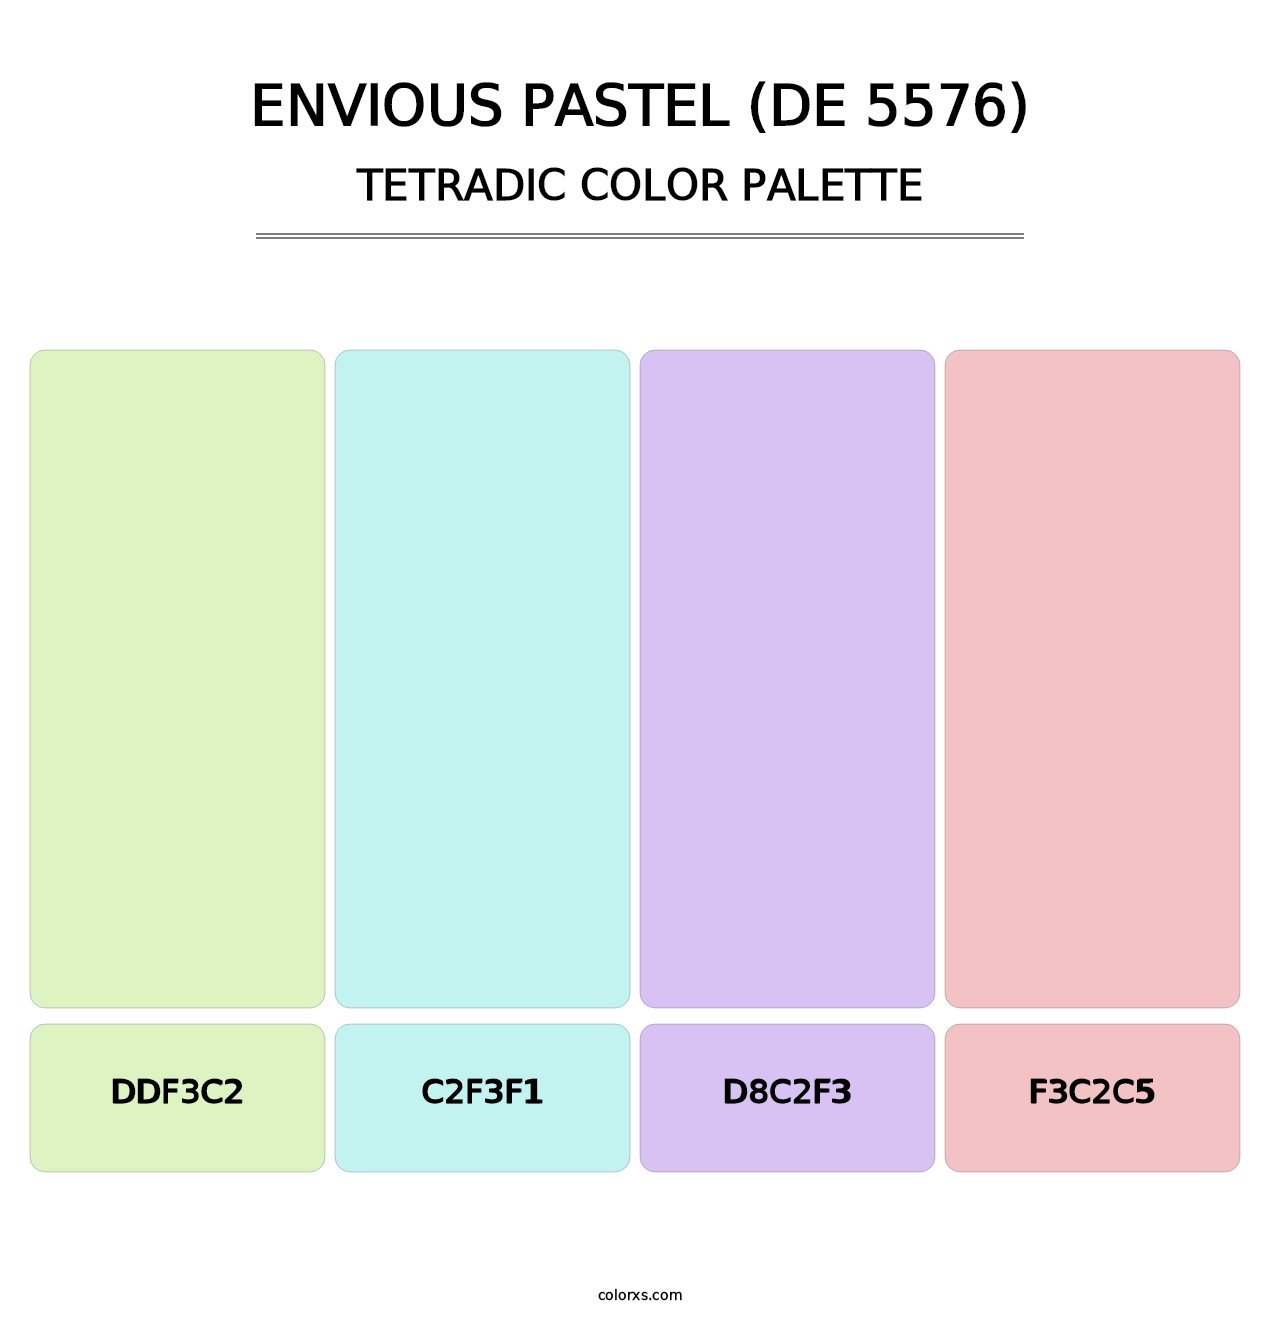 Envious Pastel (DE 5576) - Tetradic Color Palette